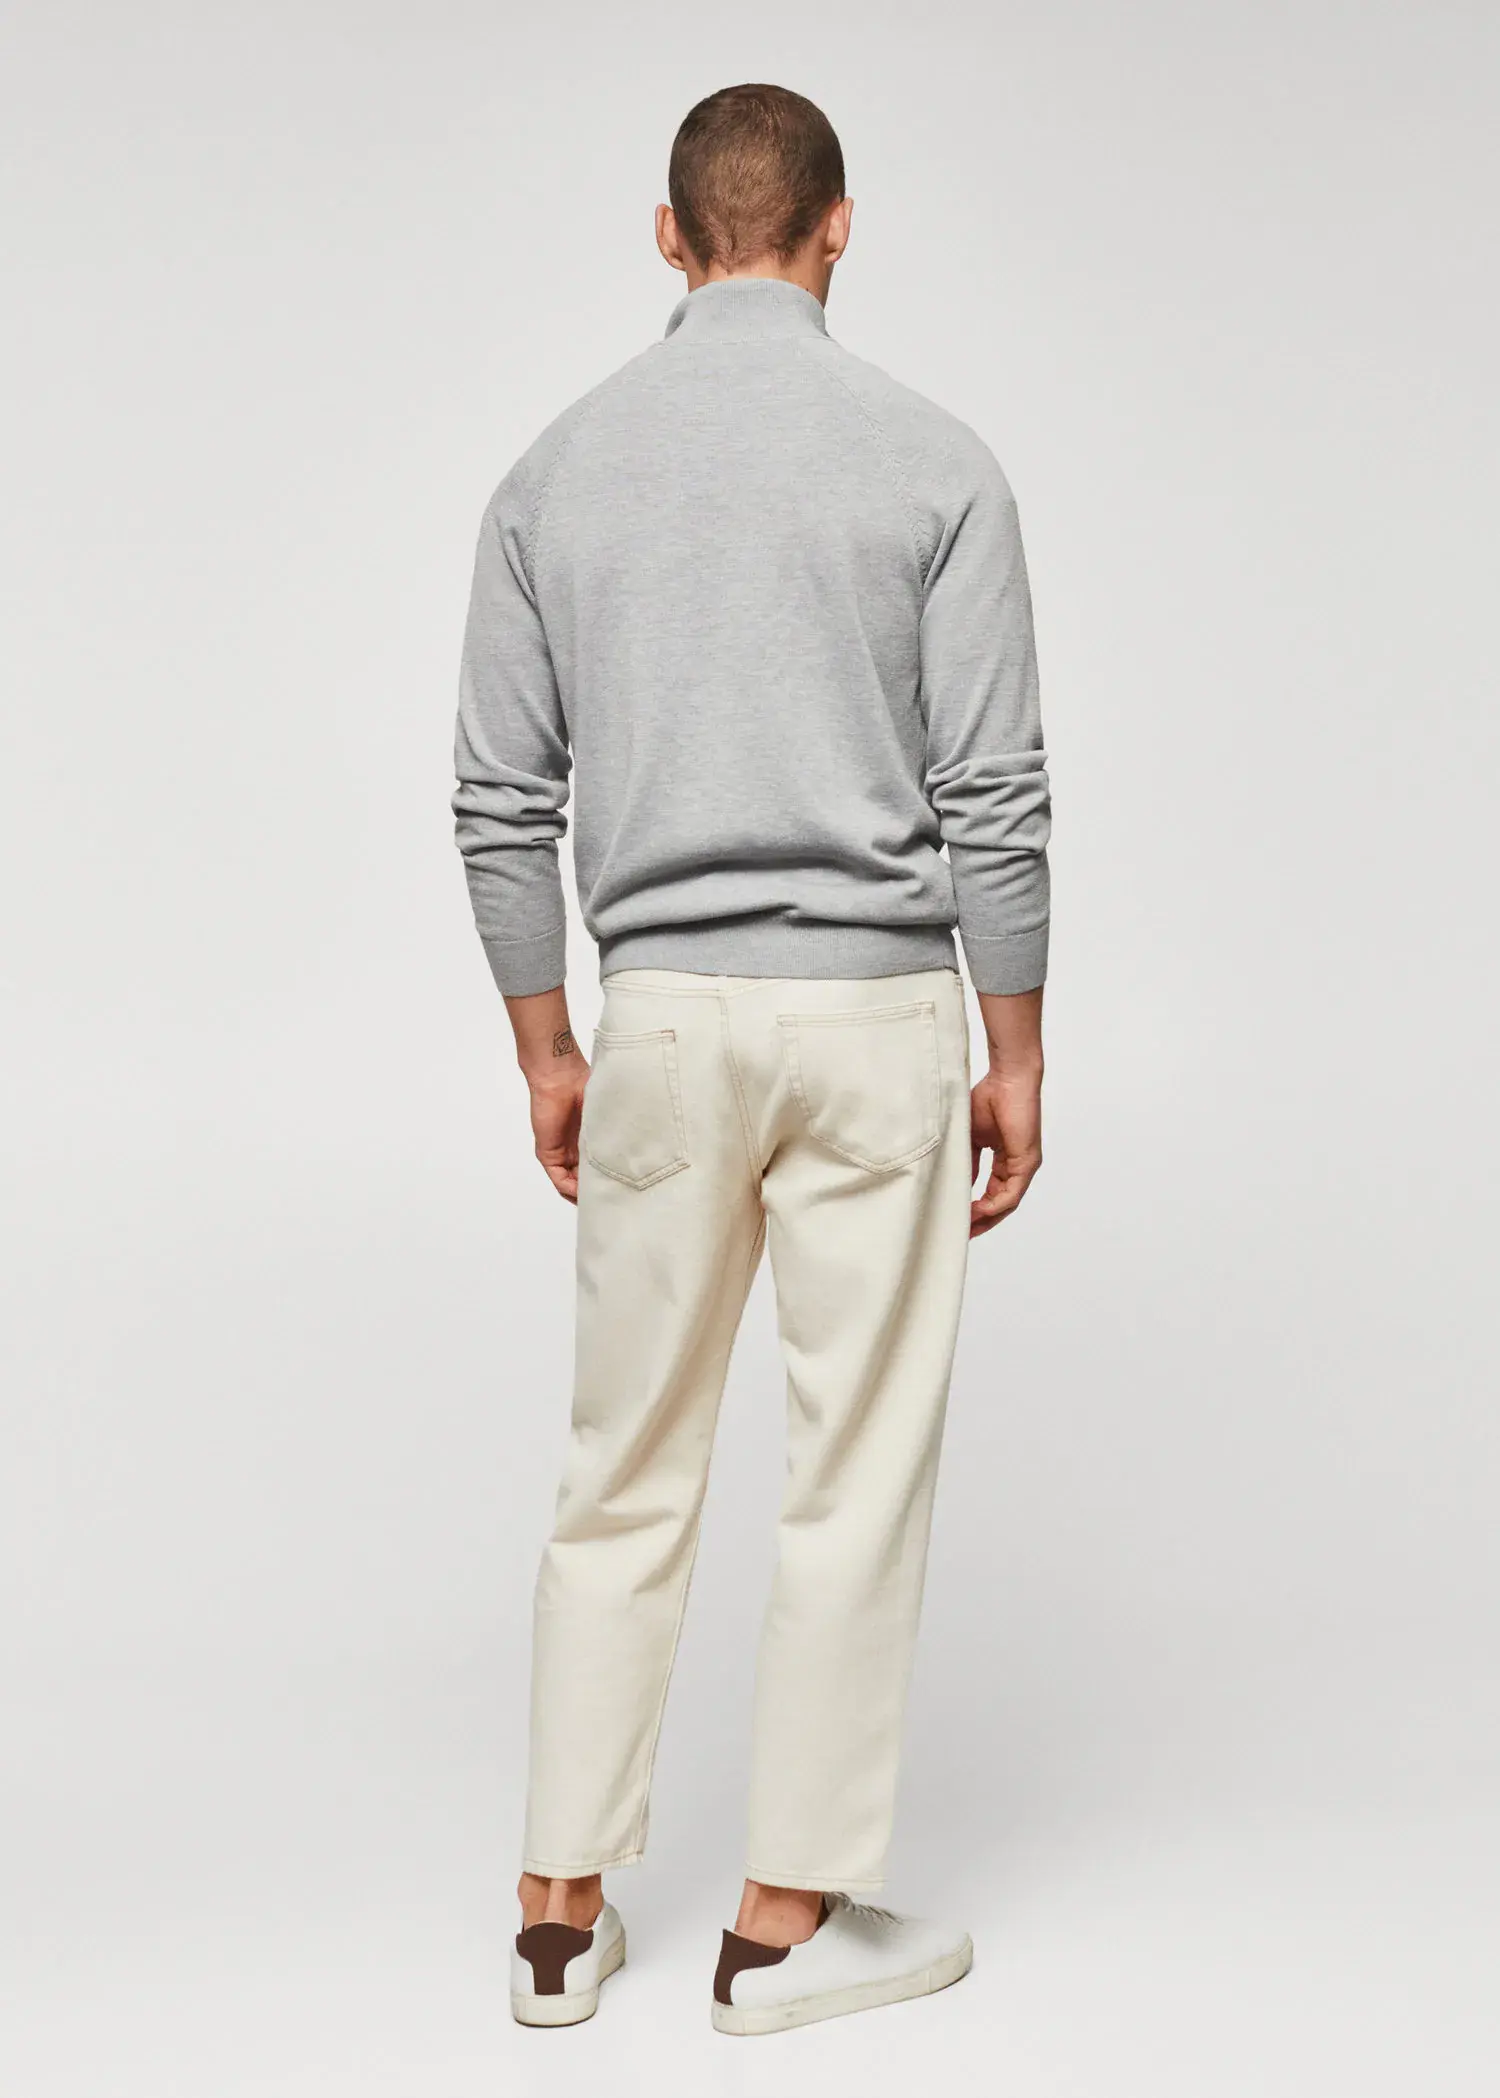 Mango Zipped cotton cardigan. a man wearing a gray sweater and white pants. 